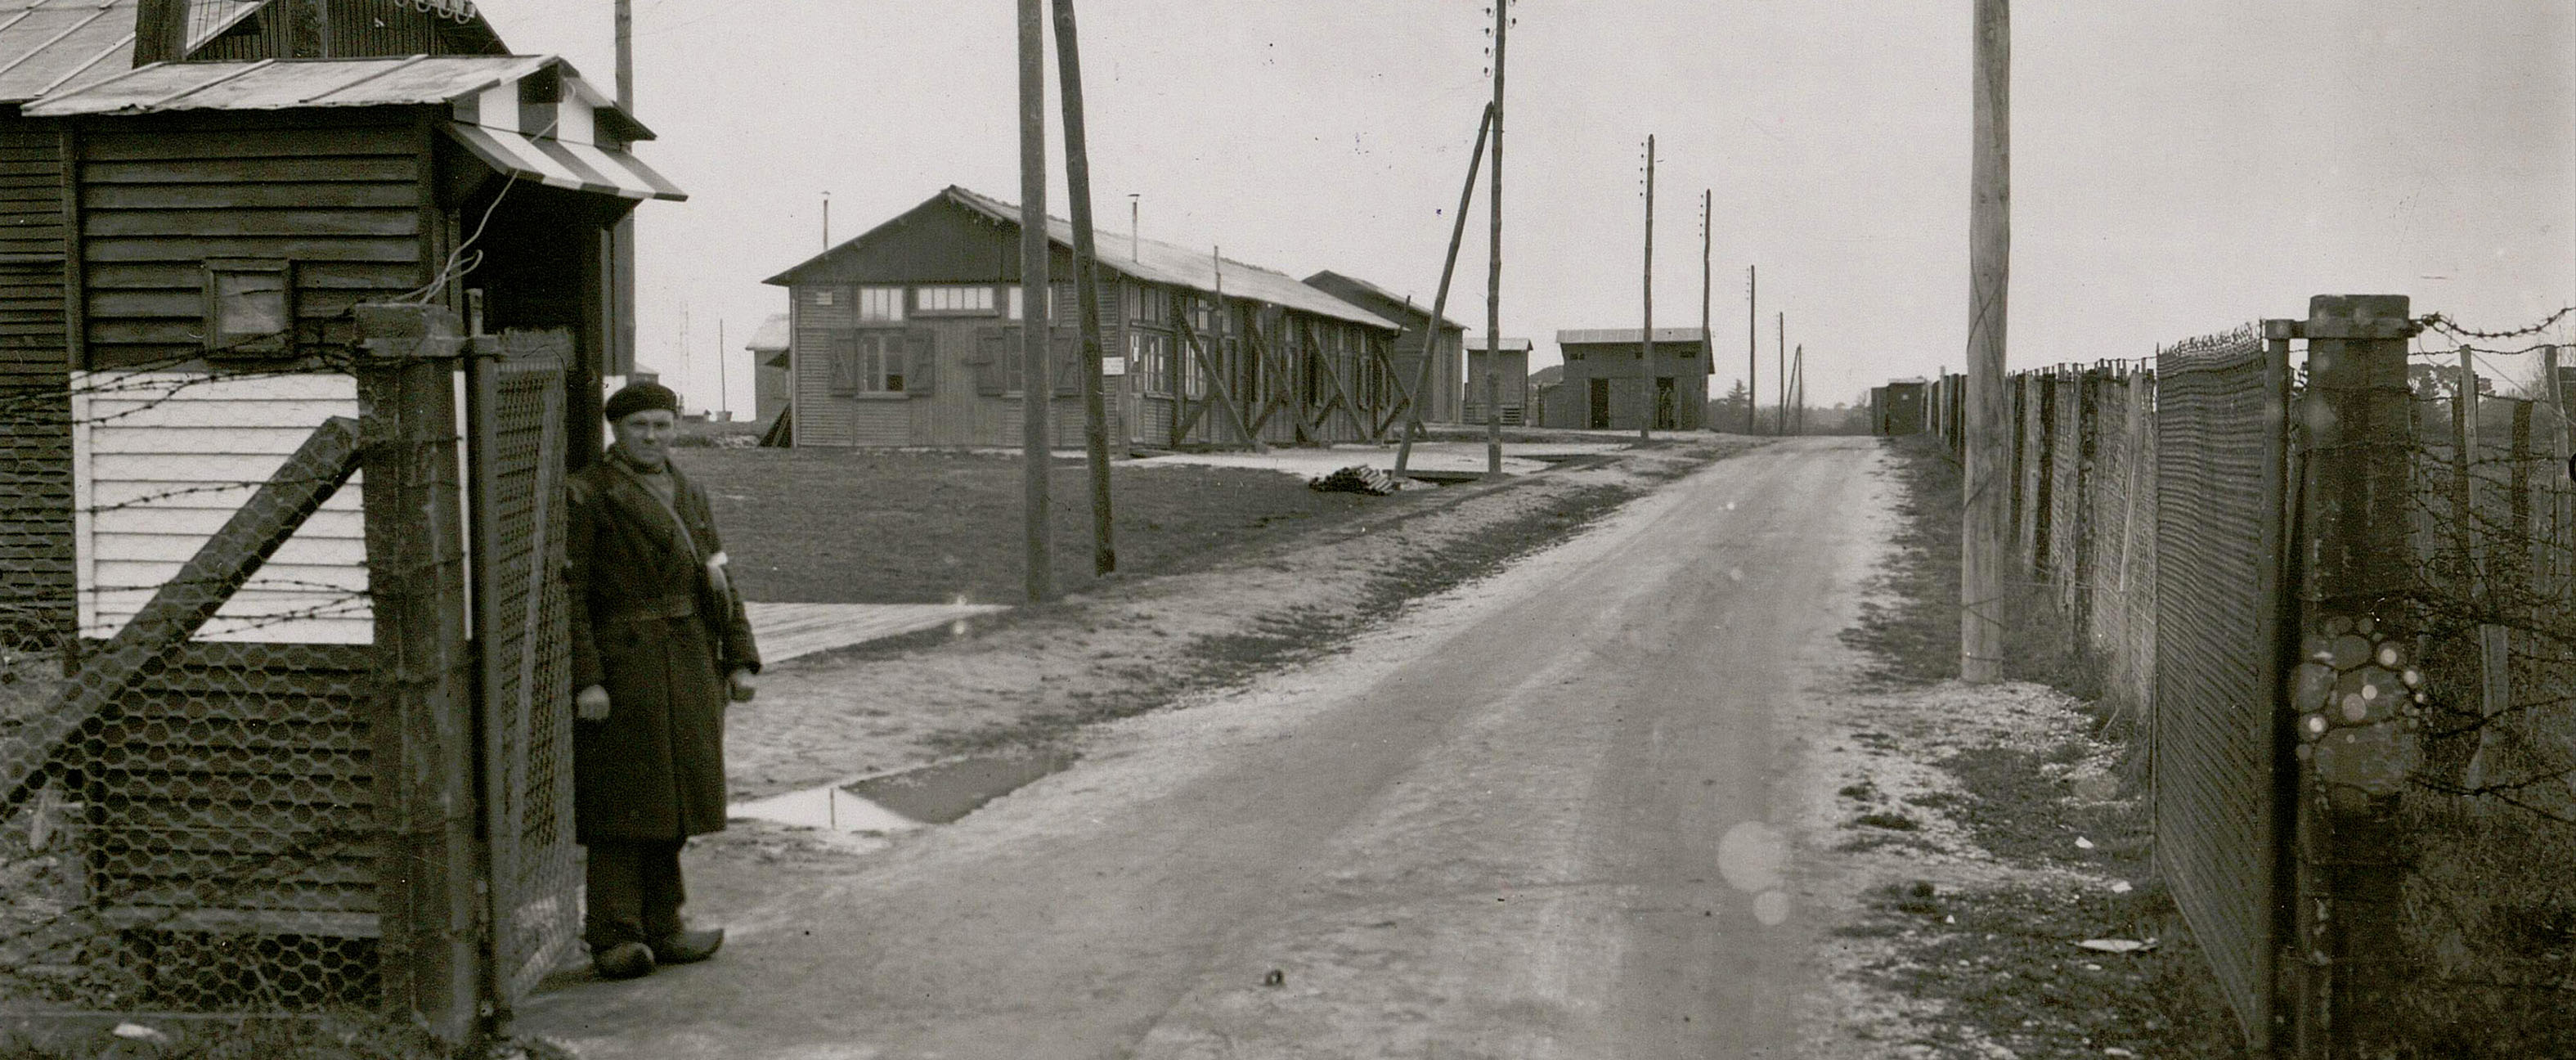 Exposition "Le camp d'internement de Mérignac 1940-1944"